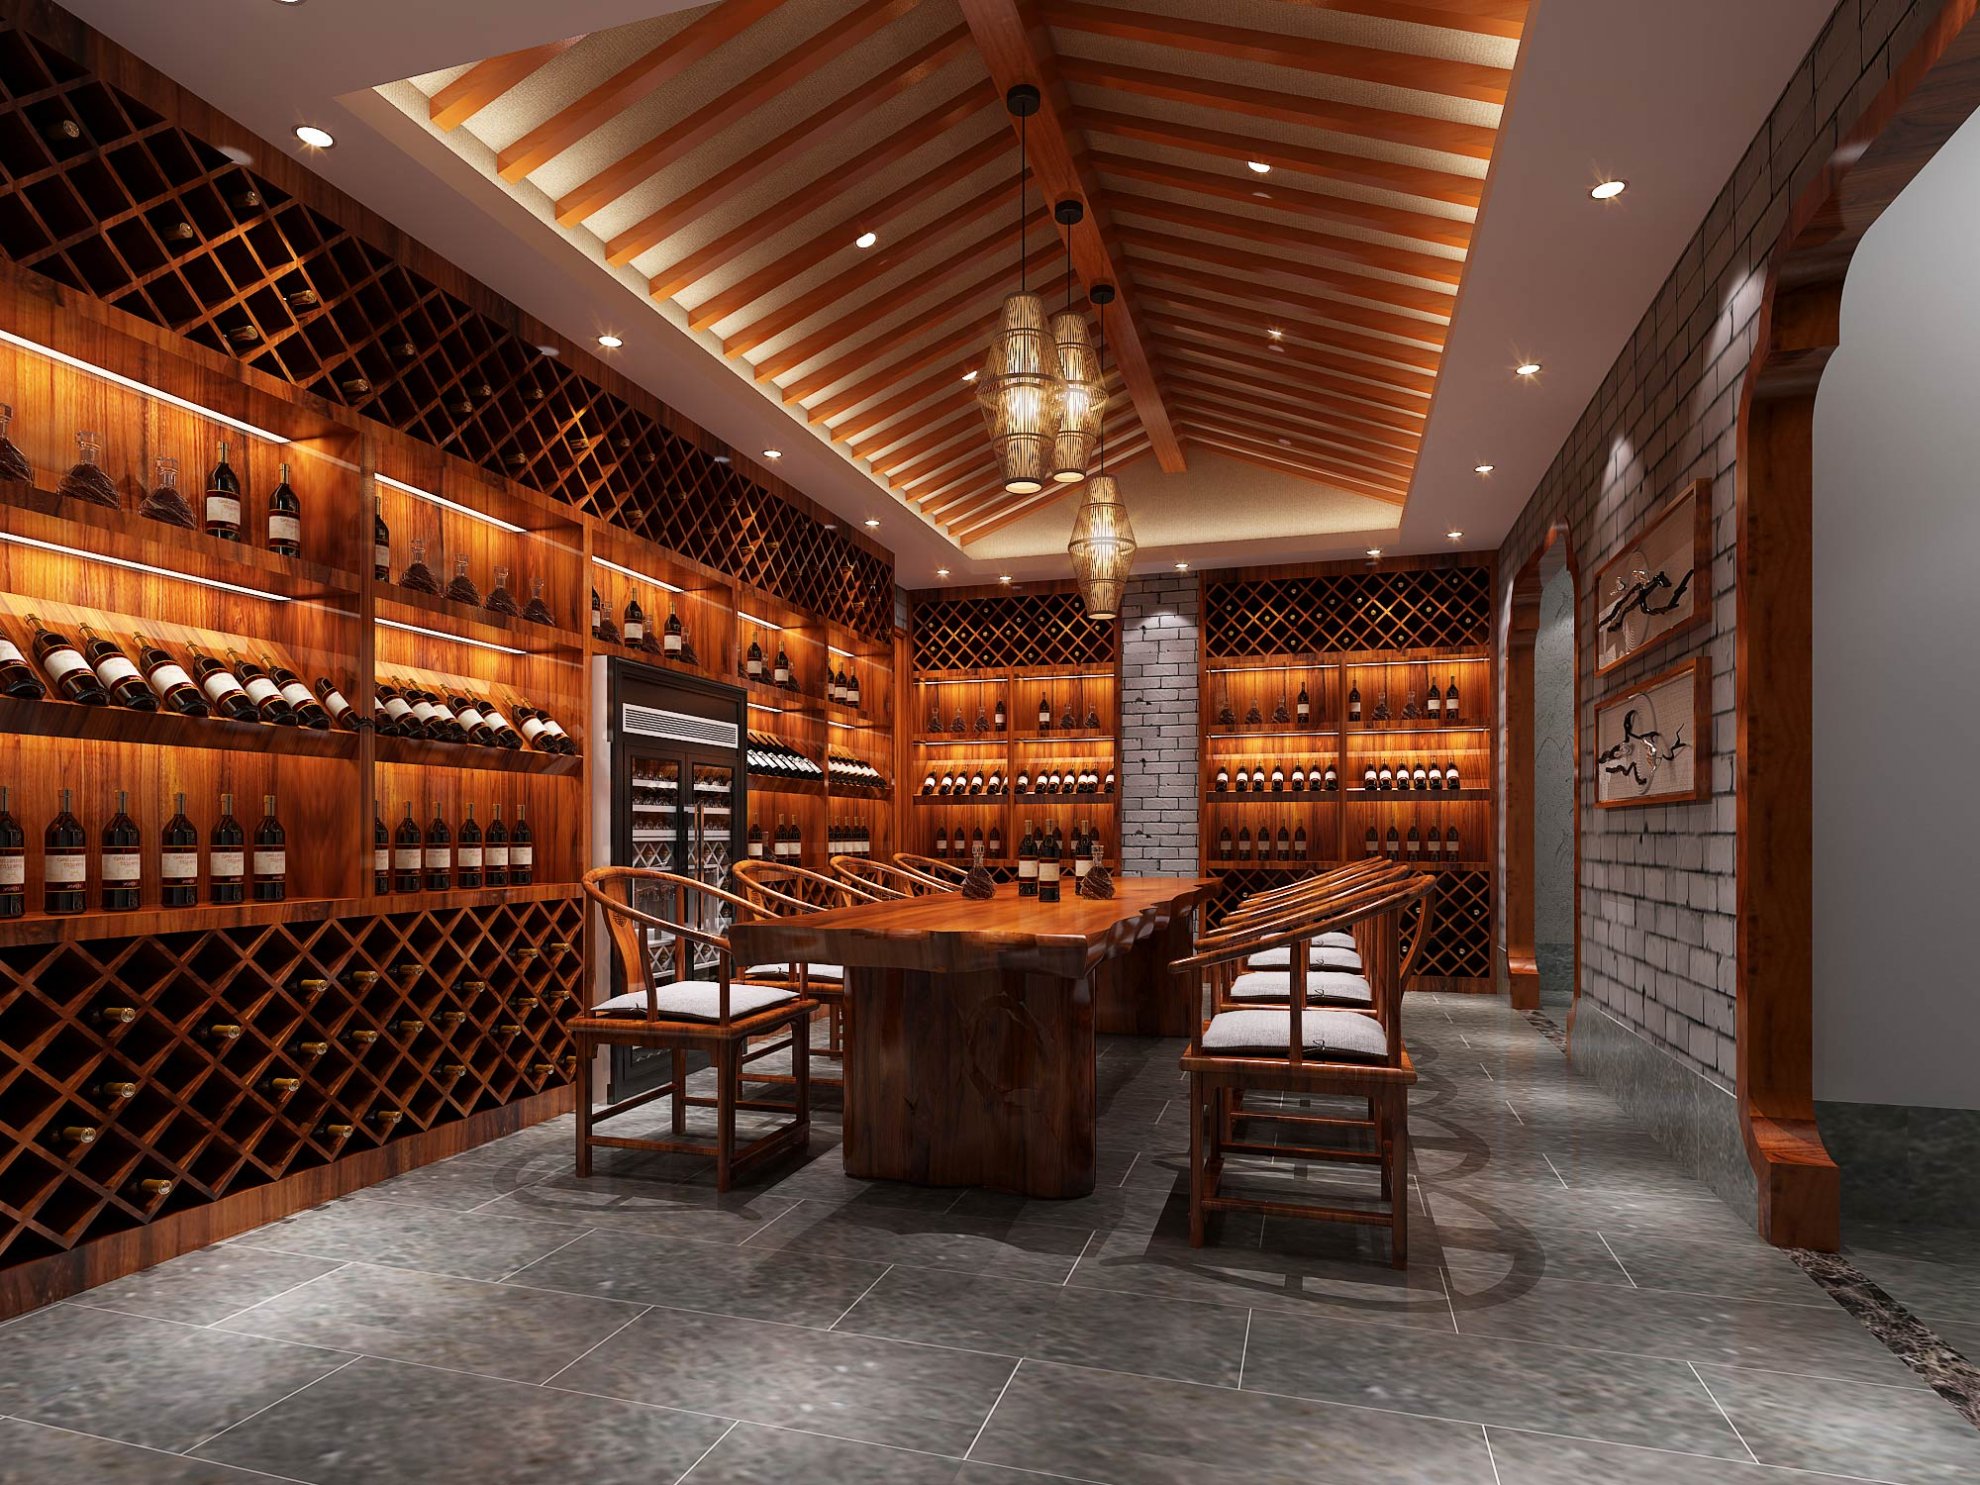 内蒙古私人整体酒窖设计制作的整体酒窖效果图方案及完工后酒窖图片-比士亞